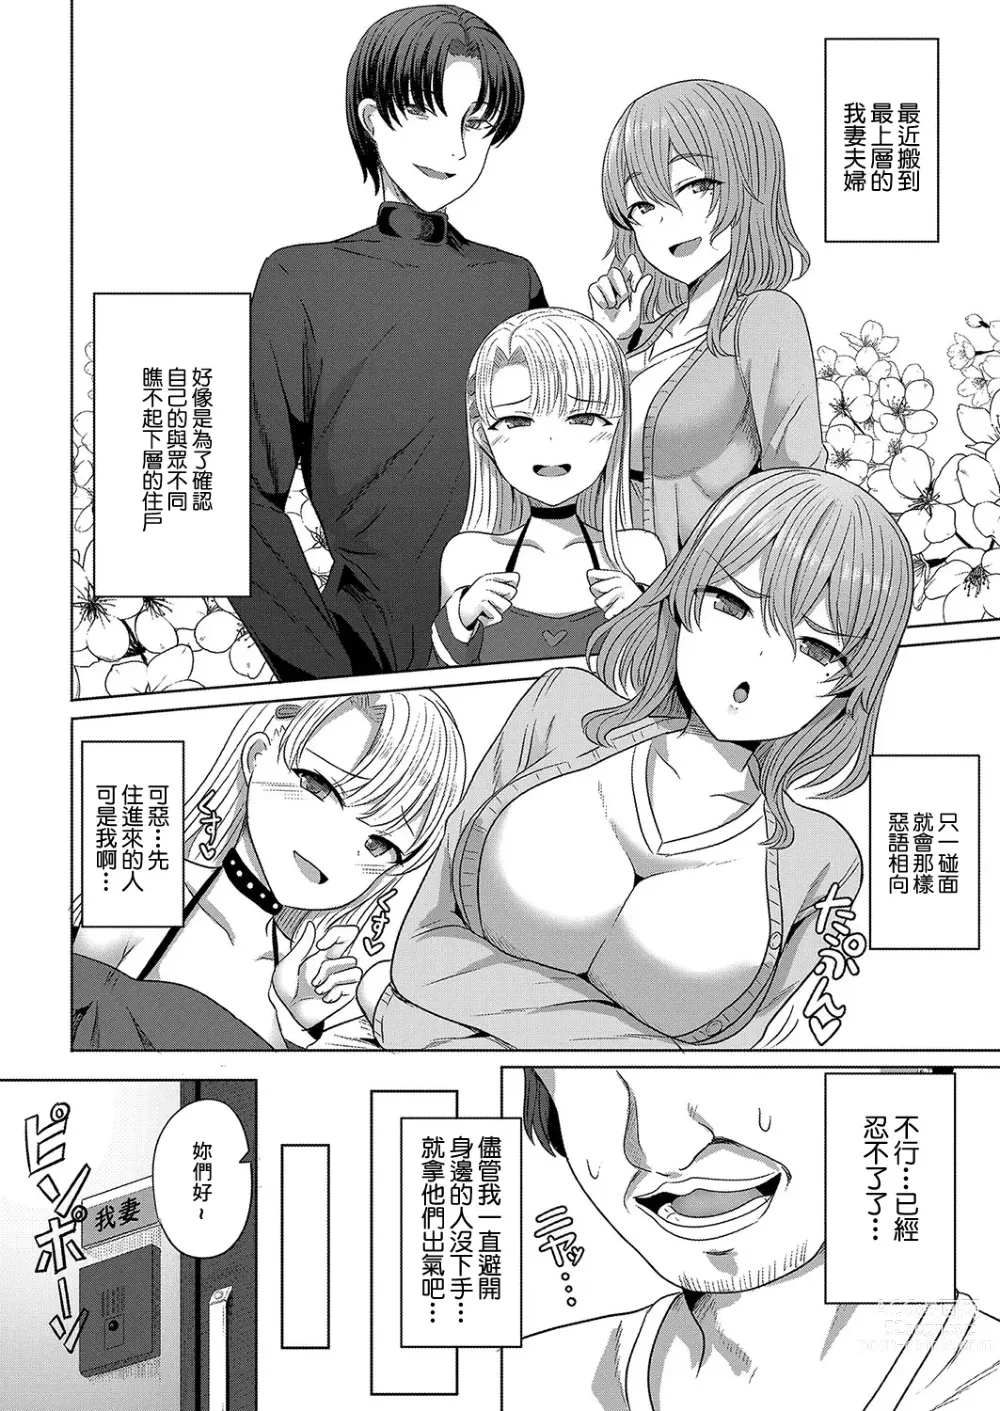 Page 4 of manga Saimin  Nottori Keikaku  Saishi Matomete  Oishiku Itadaichaimasu